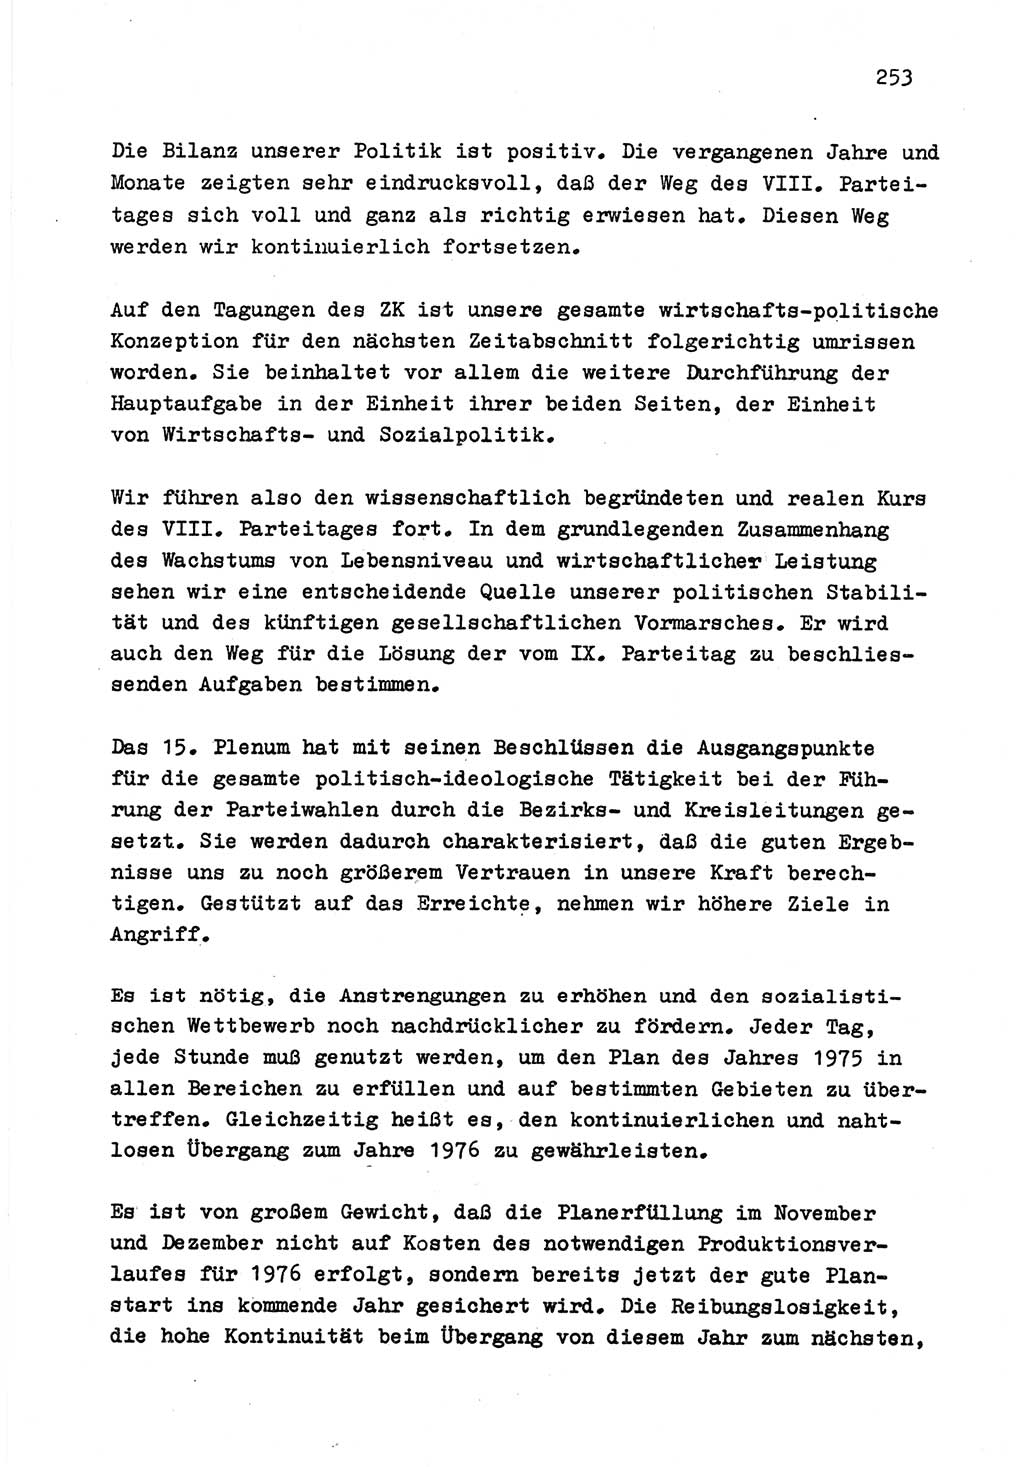 Zu Fragen der Parteiarbeit [Sozialistische Einheitspartei Deutschlands (SED) Deutsche Demokratische Republik (DDR)] 1979, Seite 253 (Fr. PA SED DDR 1979, S. 253)